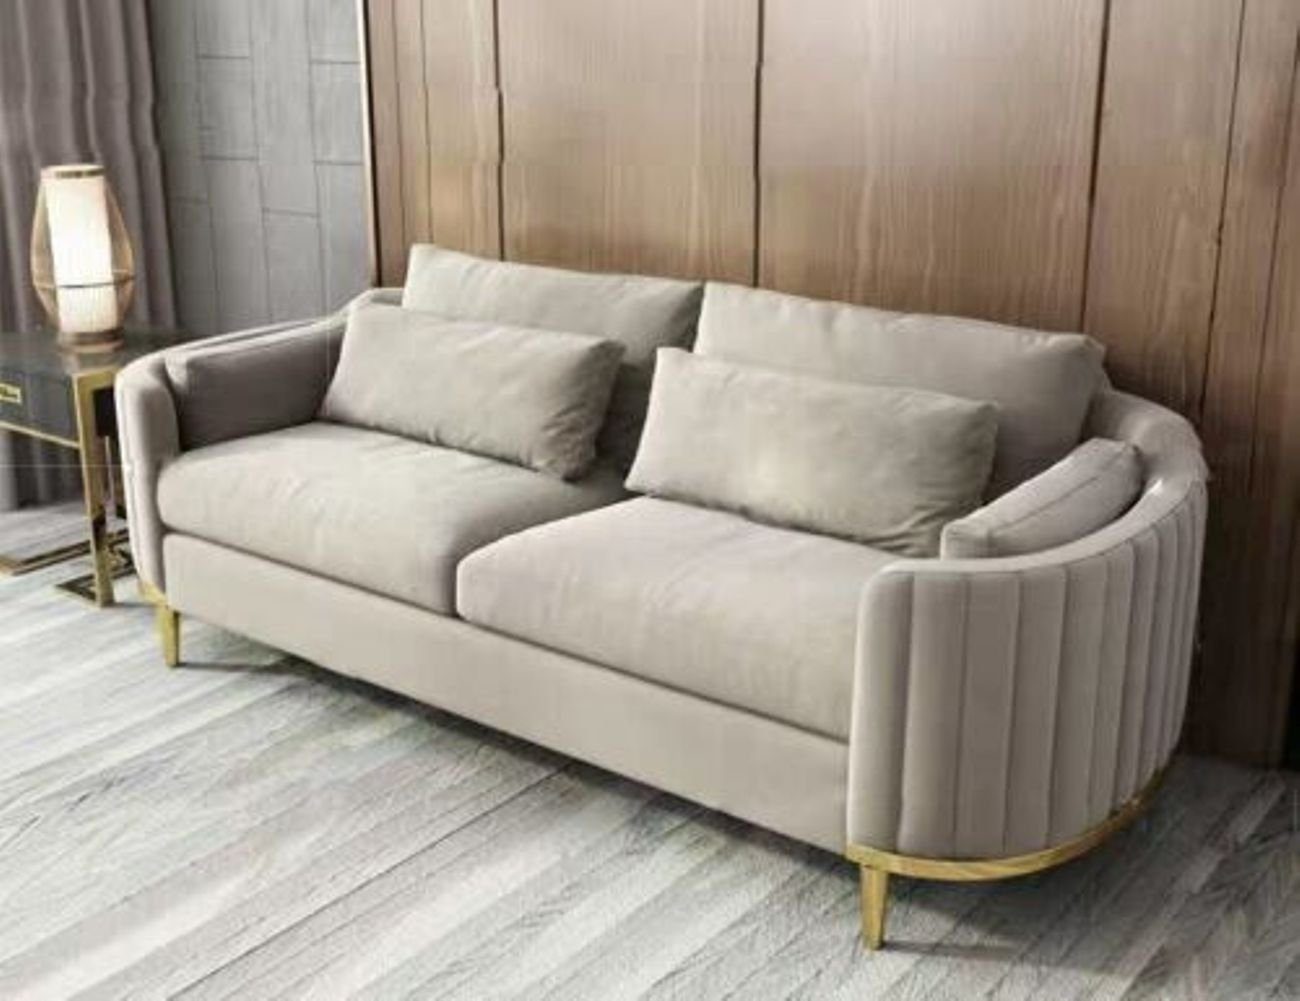 Set Garnitur 3+2+1 JVmoebel Italy Couch Komplett Wohnzimmer-Set, Sofa Couchen Möbel Design